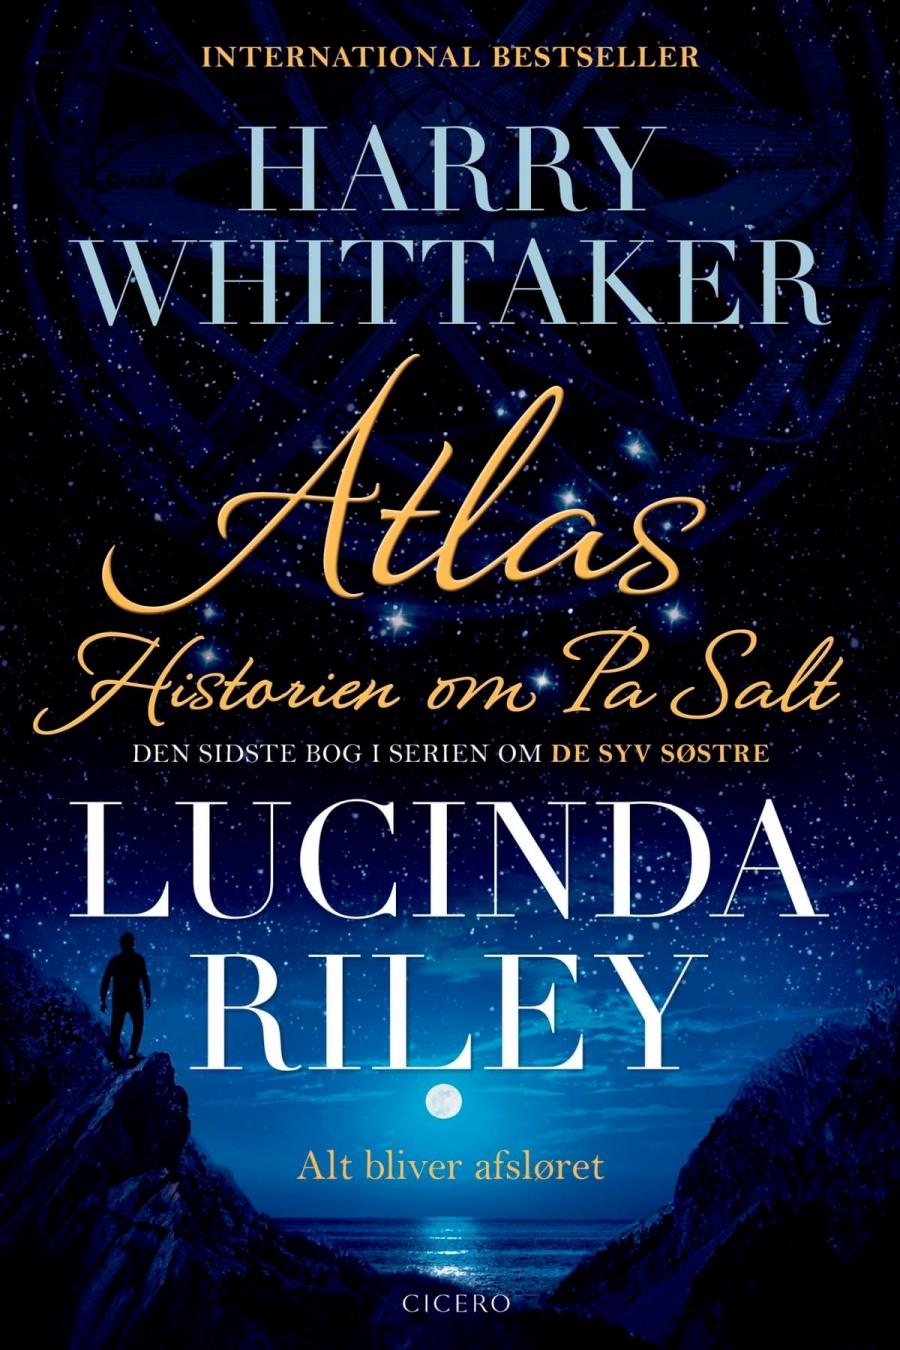 Forside af Lucinda Riley bog: Skyggen af en mand i måneskin